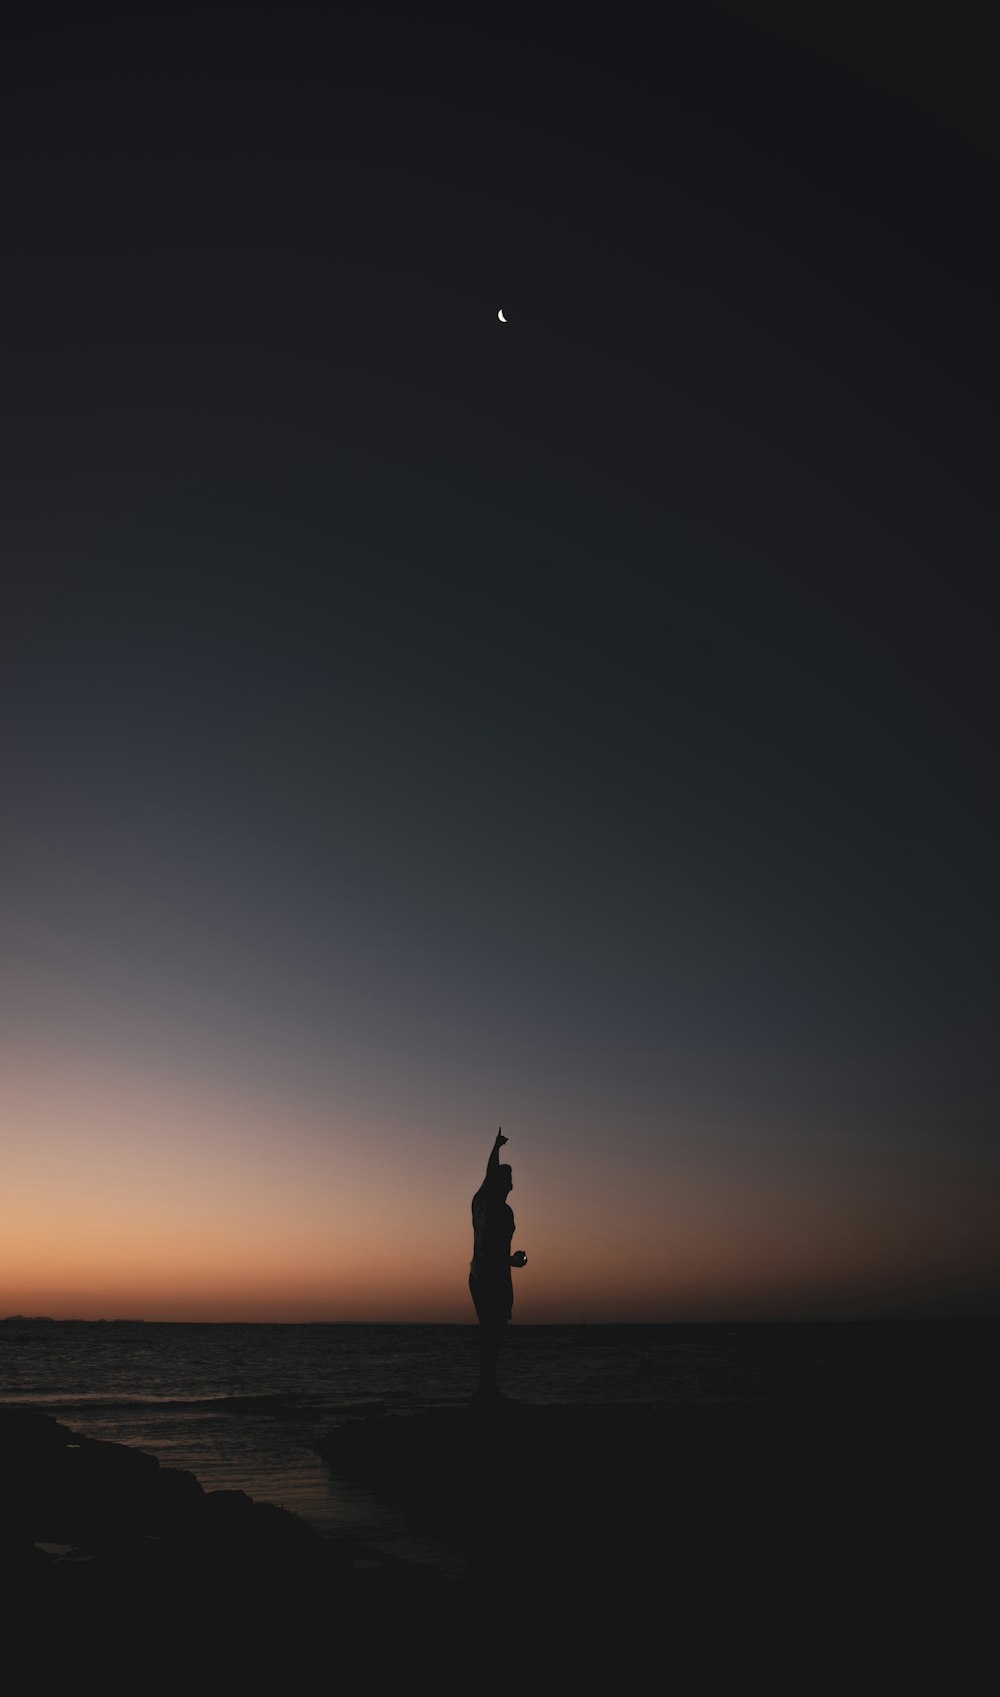 Una siluetta di una persona in piedi su una spiaggia al tramonto